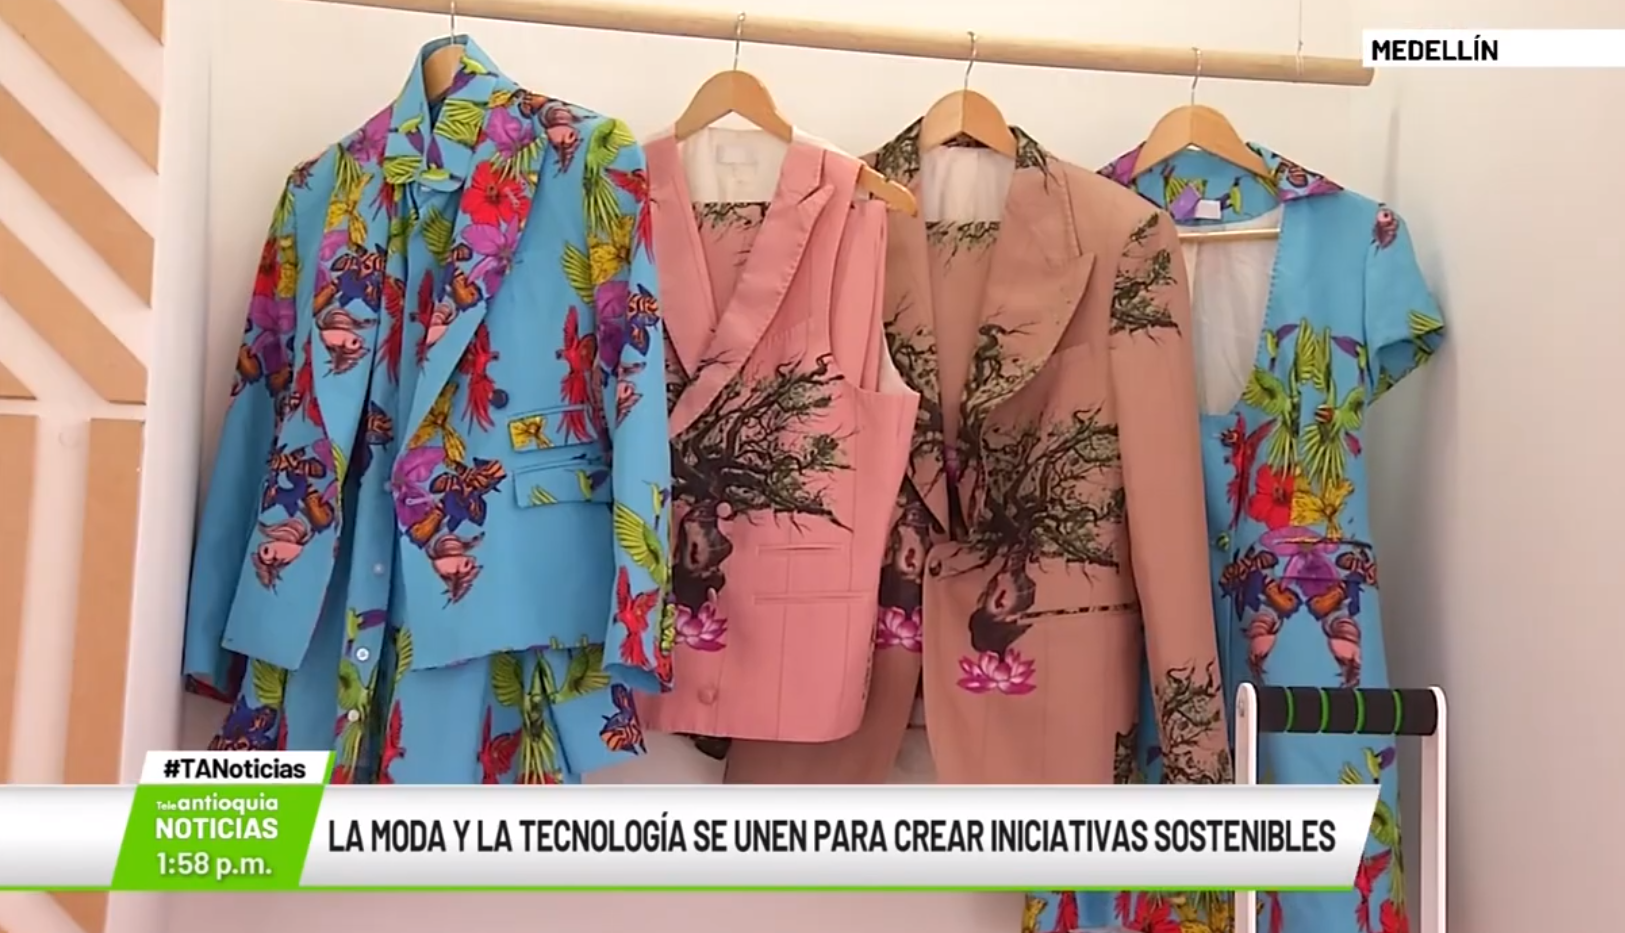 La moda y la tecnología se unen para crear iniciativas sostenibles